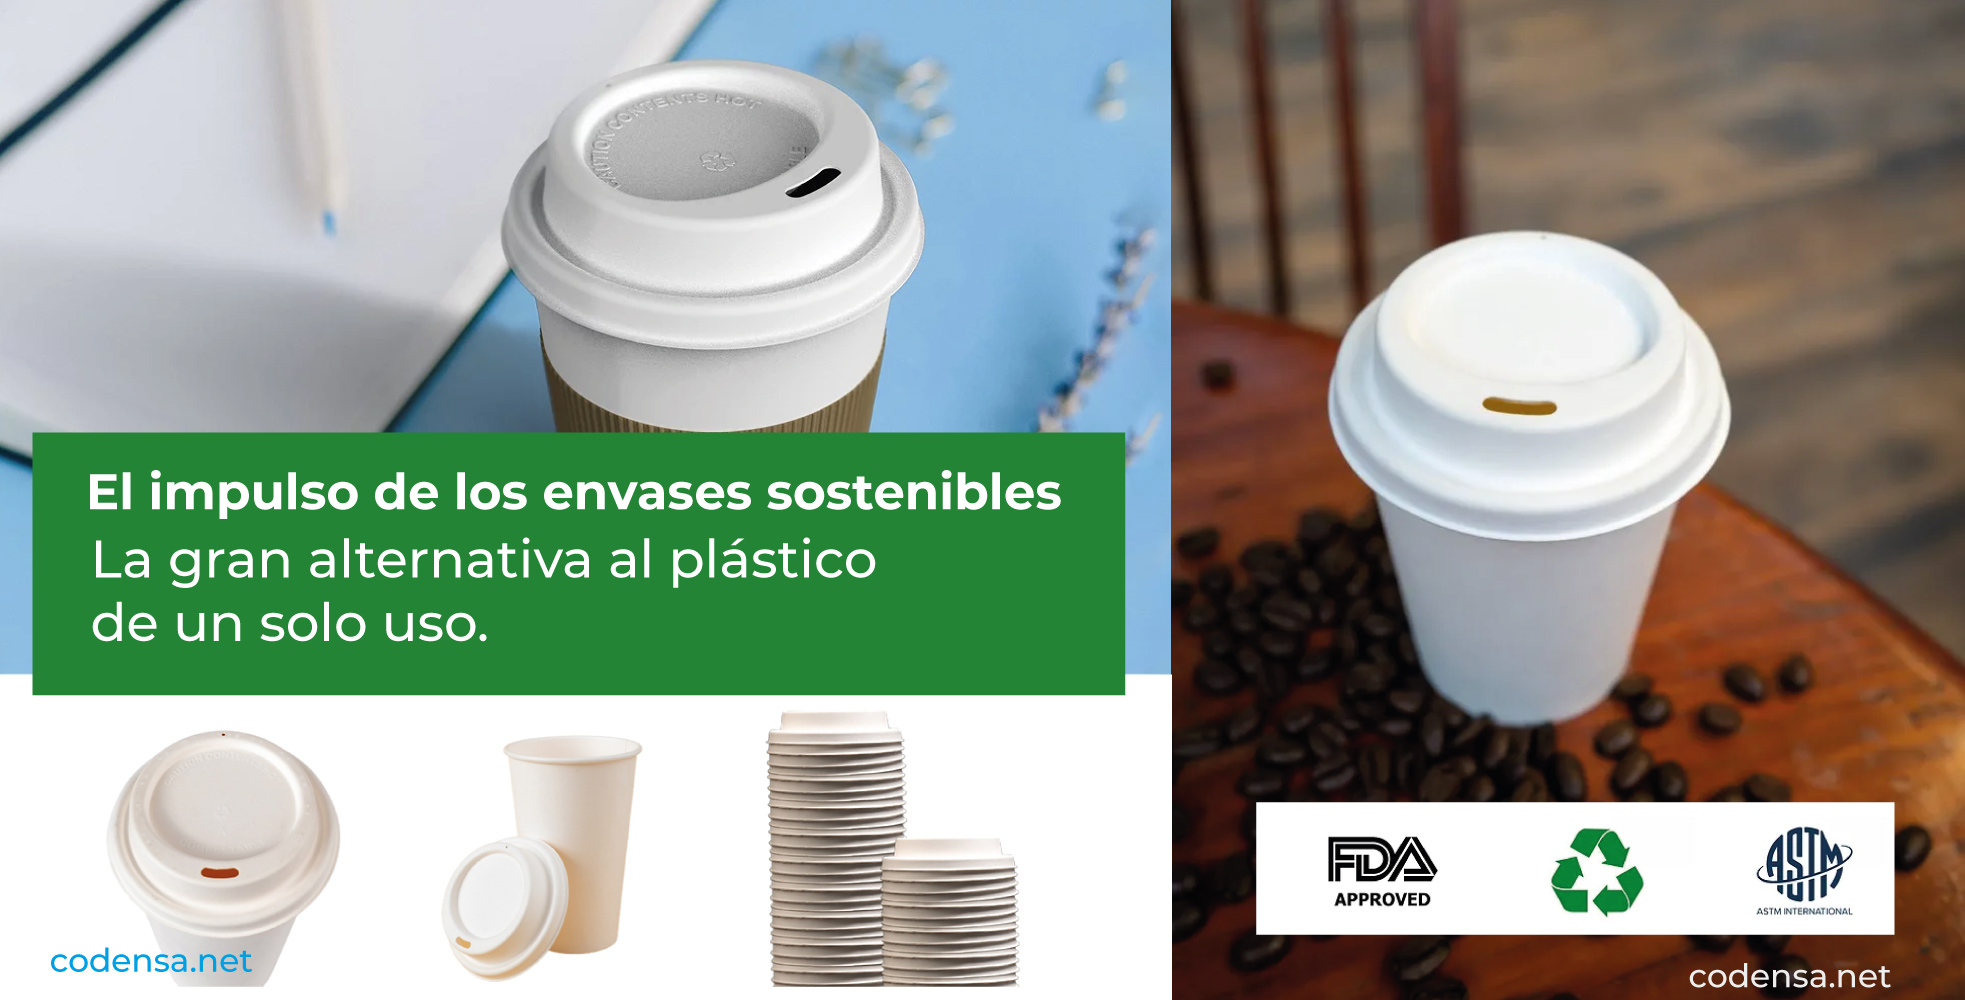 Los envases biodegradables son una alternativa a los de plástico